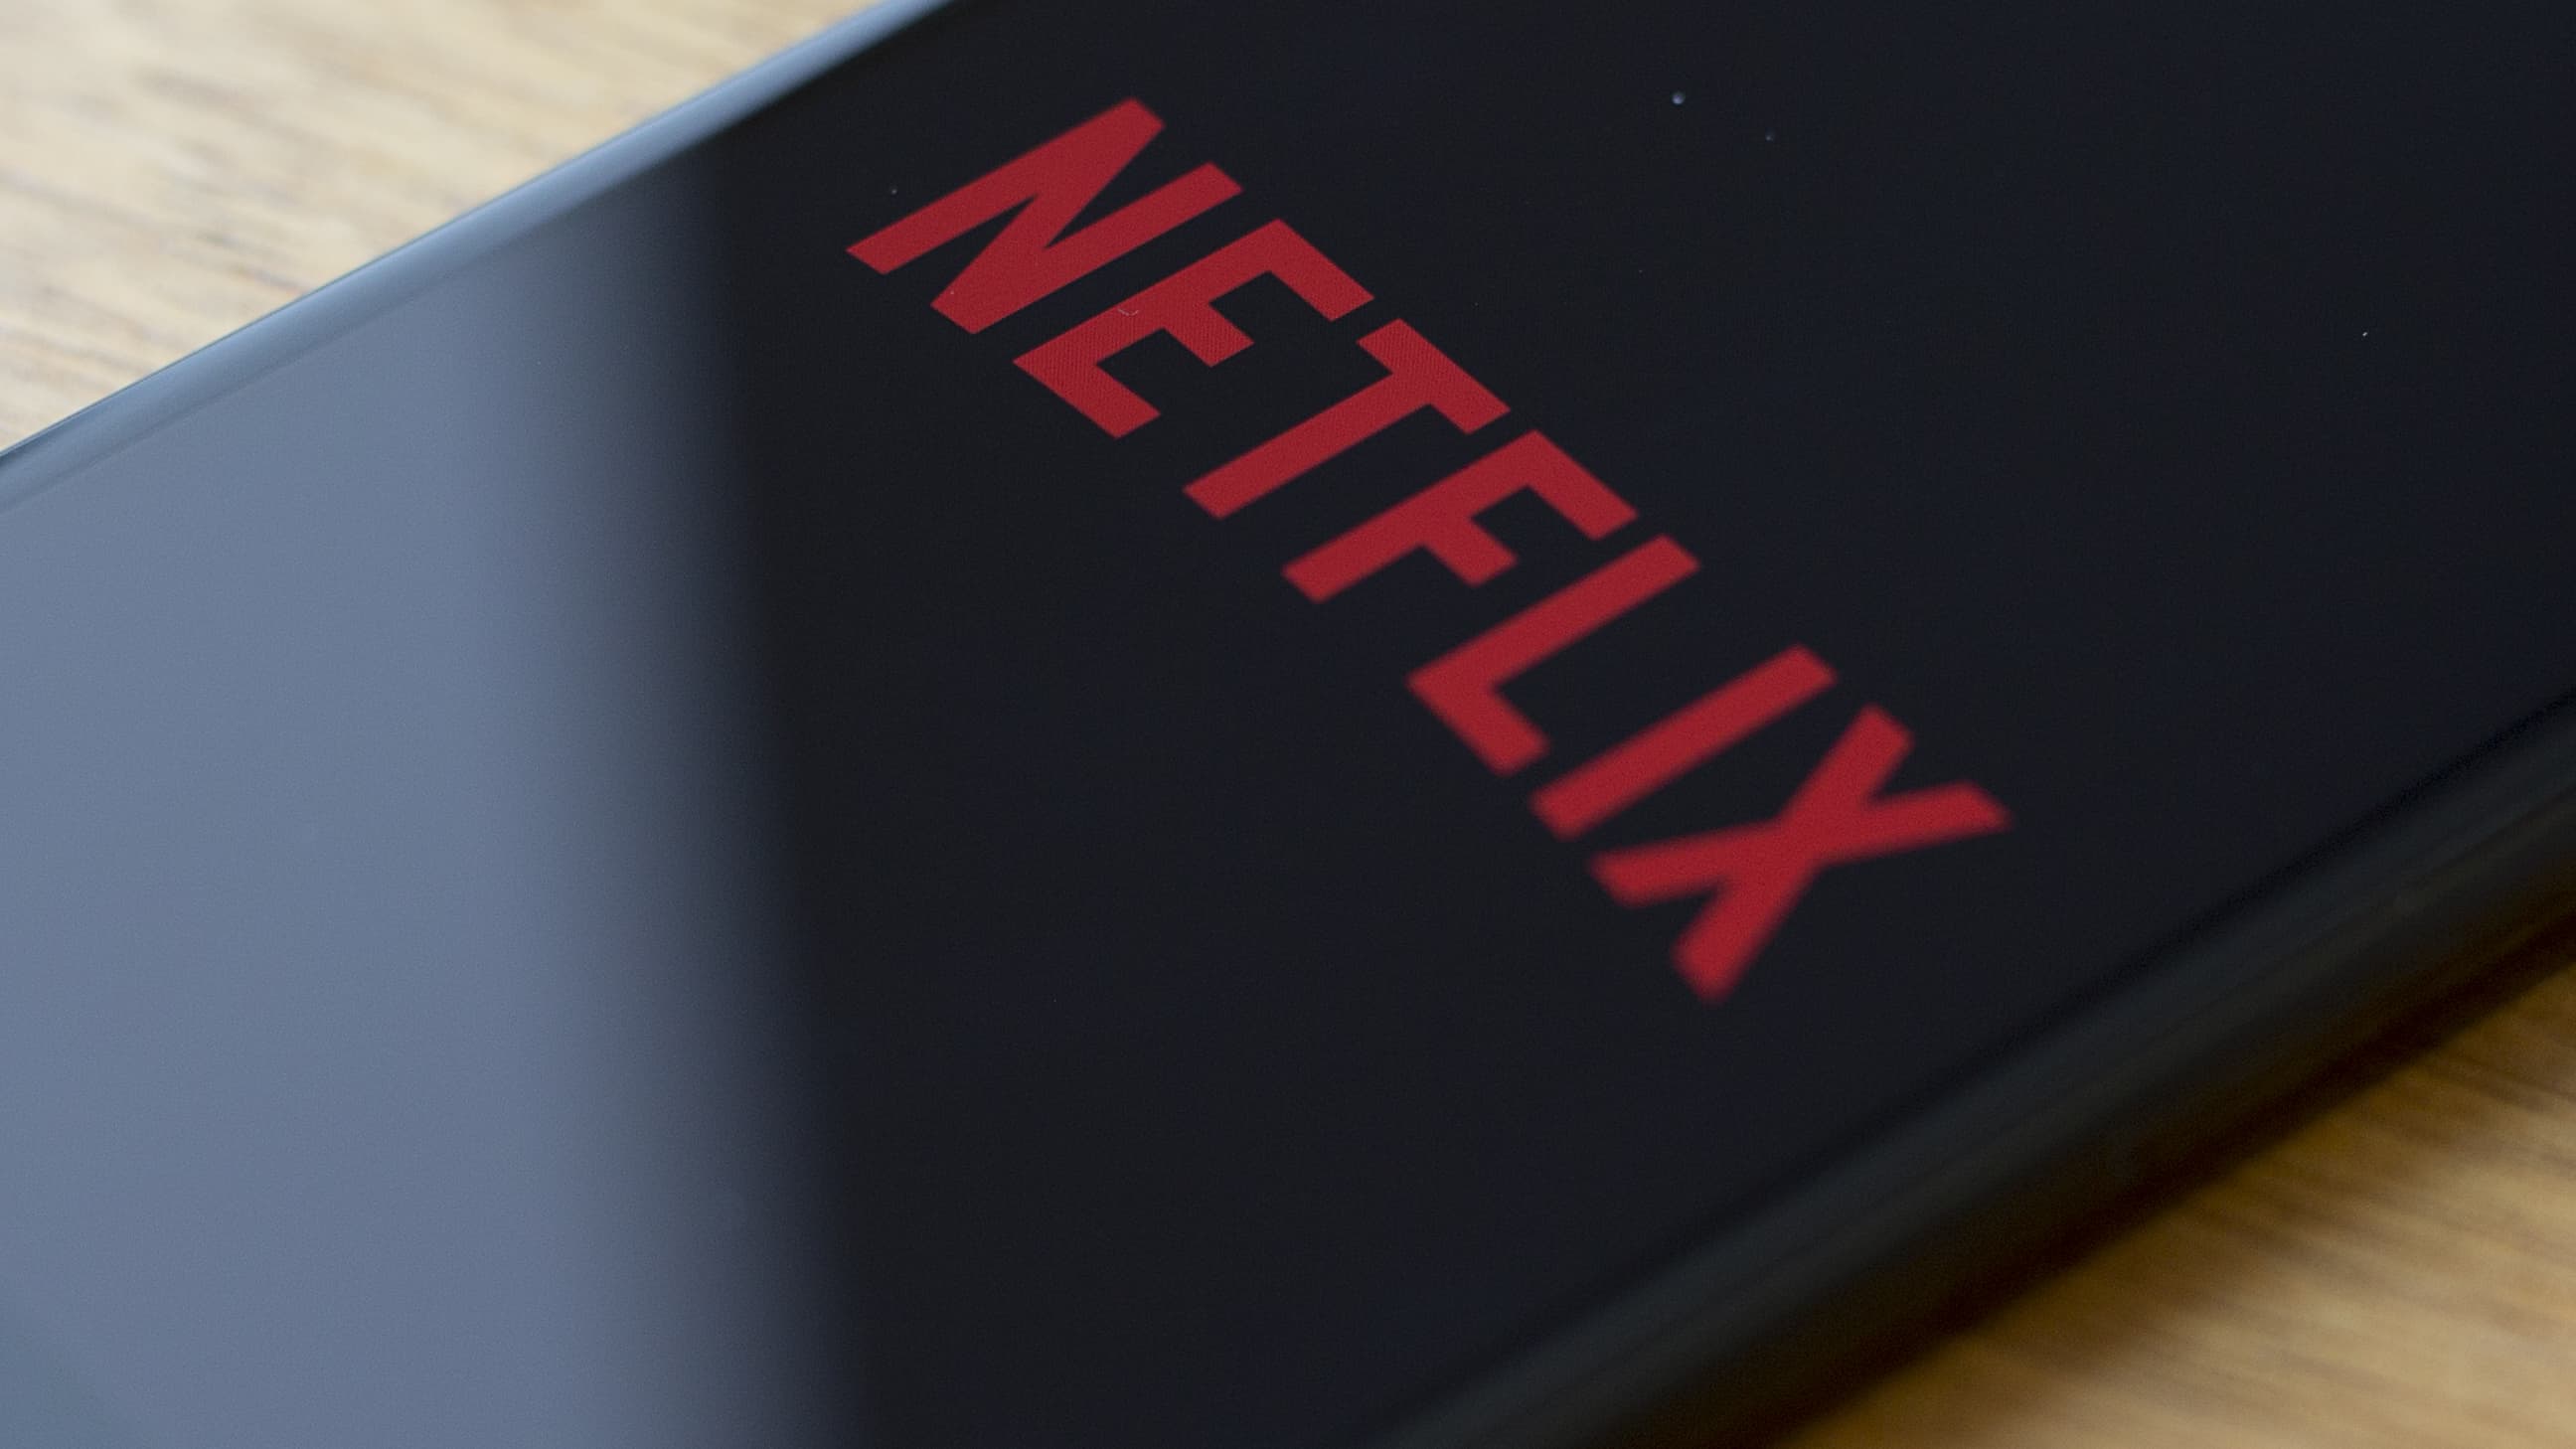 Abonnement Netflix à 6 euros par mois, bon plan ? - Zurbains